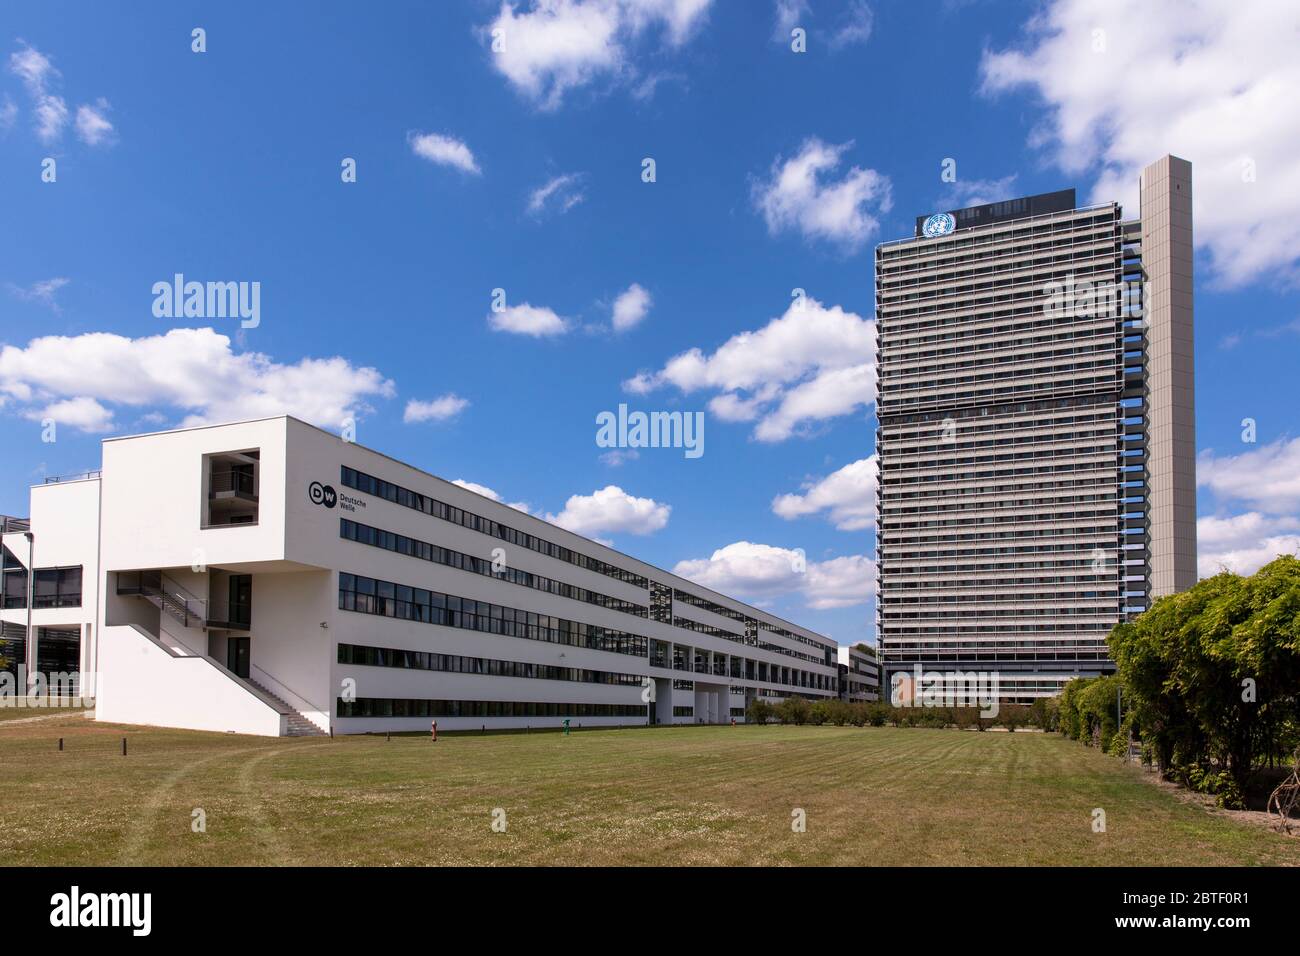 Siège de la Deutsche Welle et immeuble de bureaux Tall Eugen, il abrite plusieurs organisations des Nations Unies, Bonn, Rhénanie-du-Nord-Westphalie, G. Banque D'Images